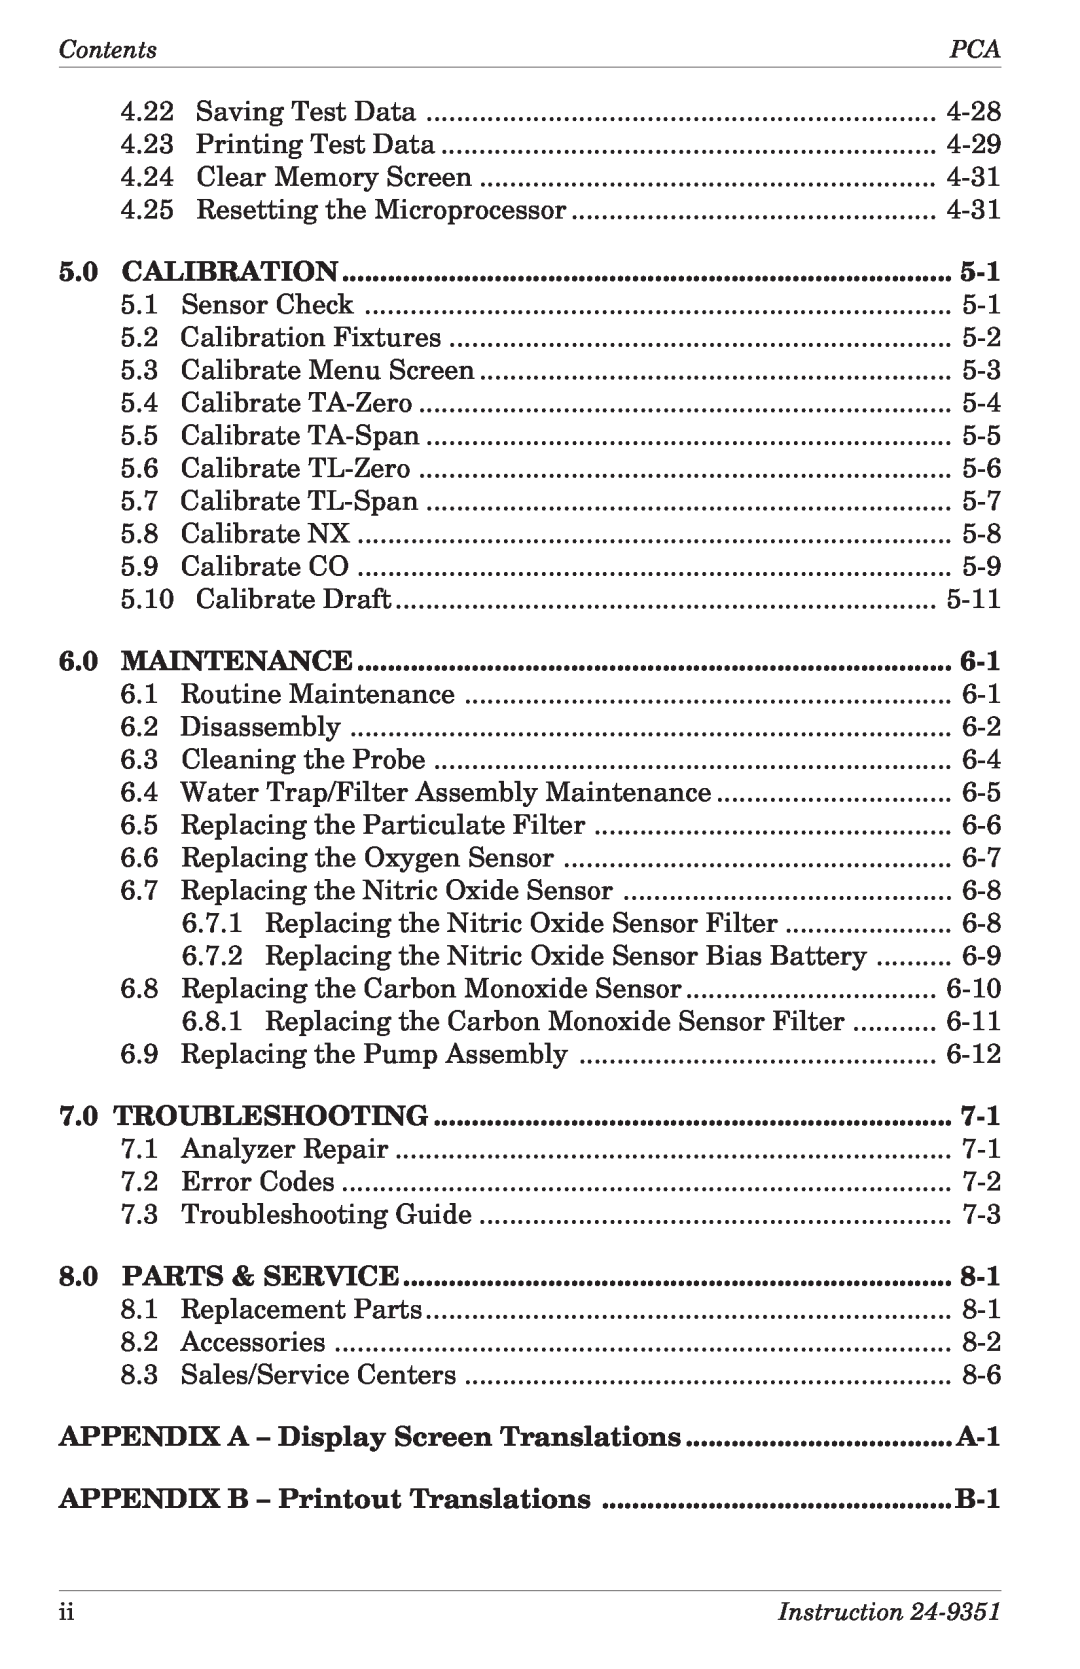 Bacharach 24-9351 manual Calibration 